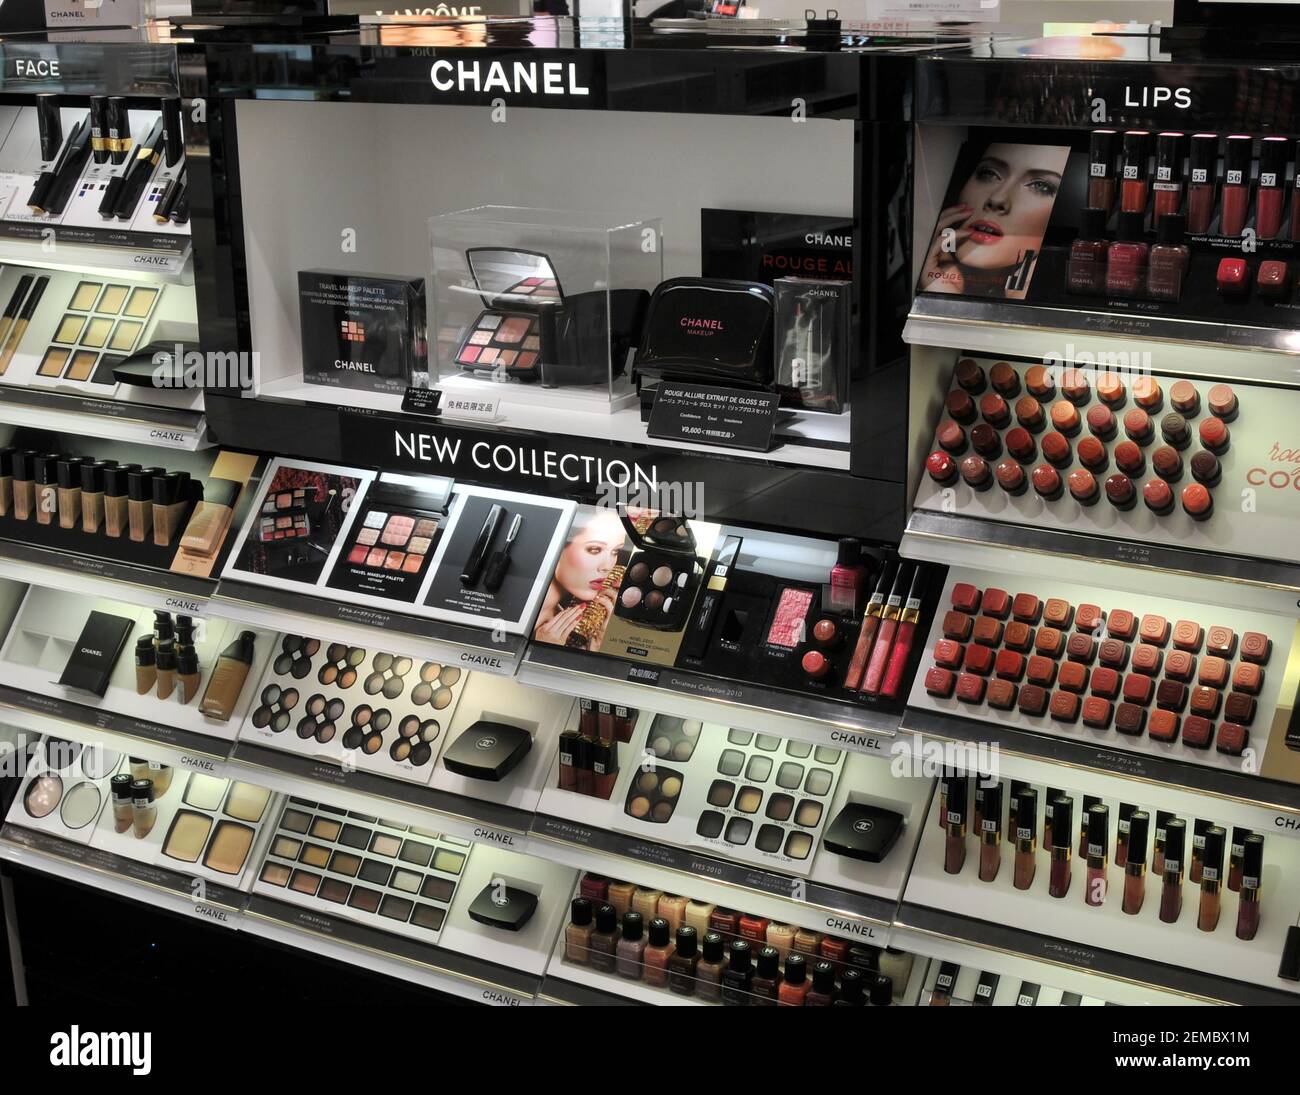 Chanel makeup immagini e fotografie stock ad alta risoluzione - Alamy